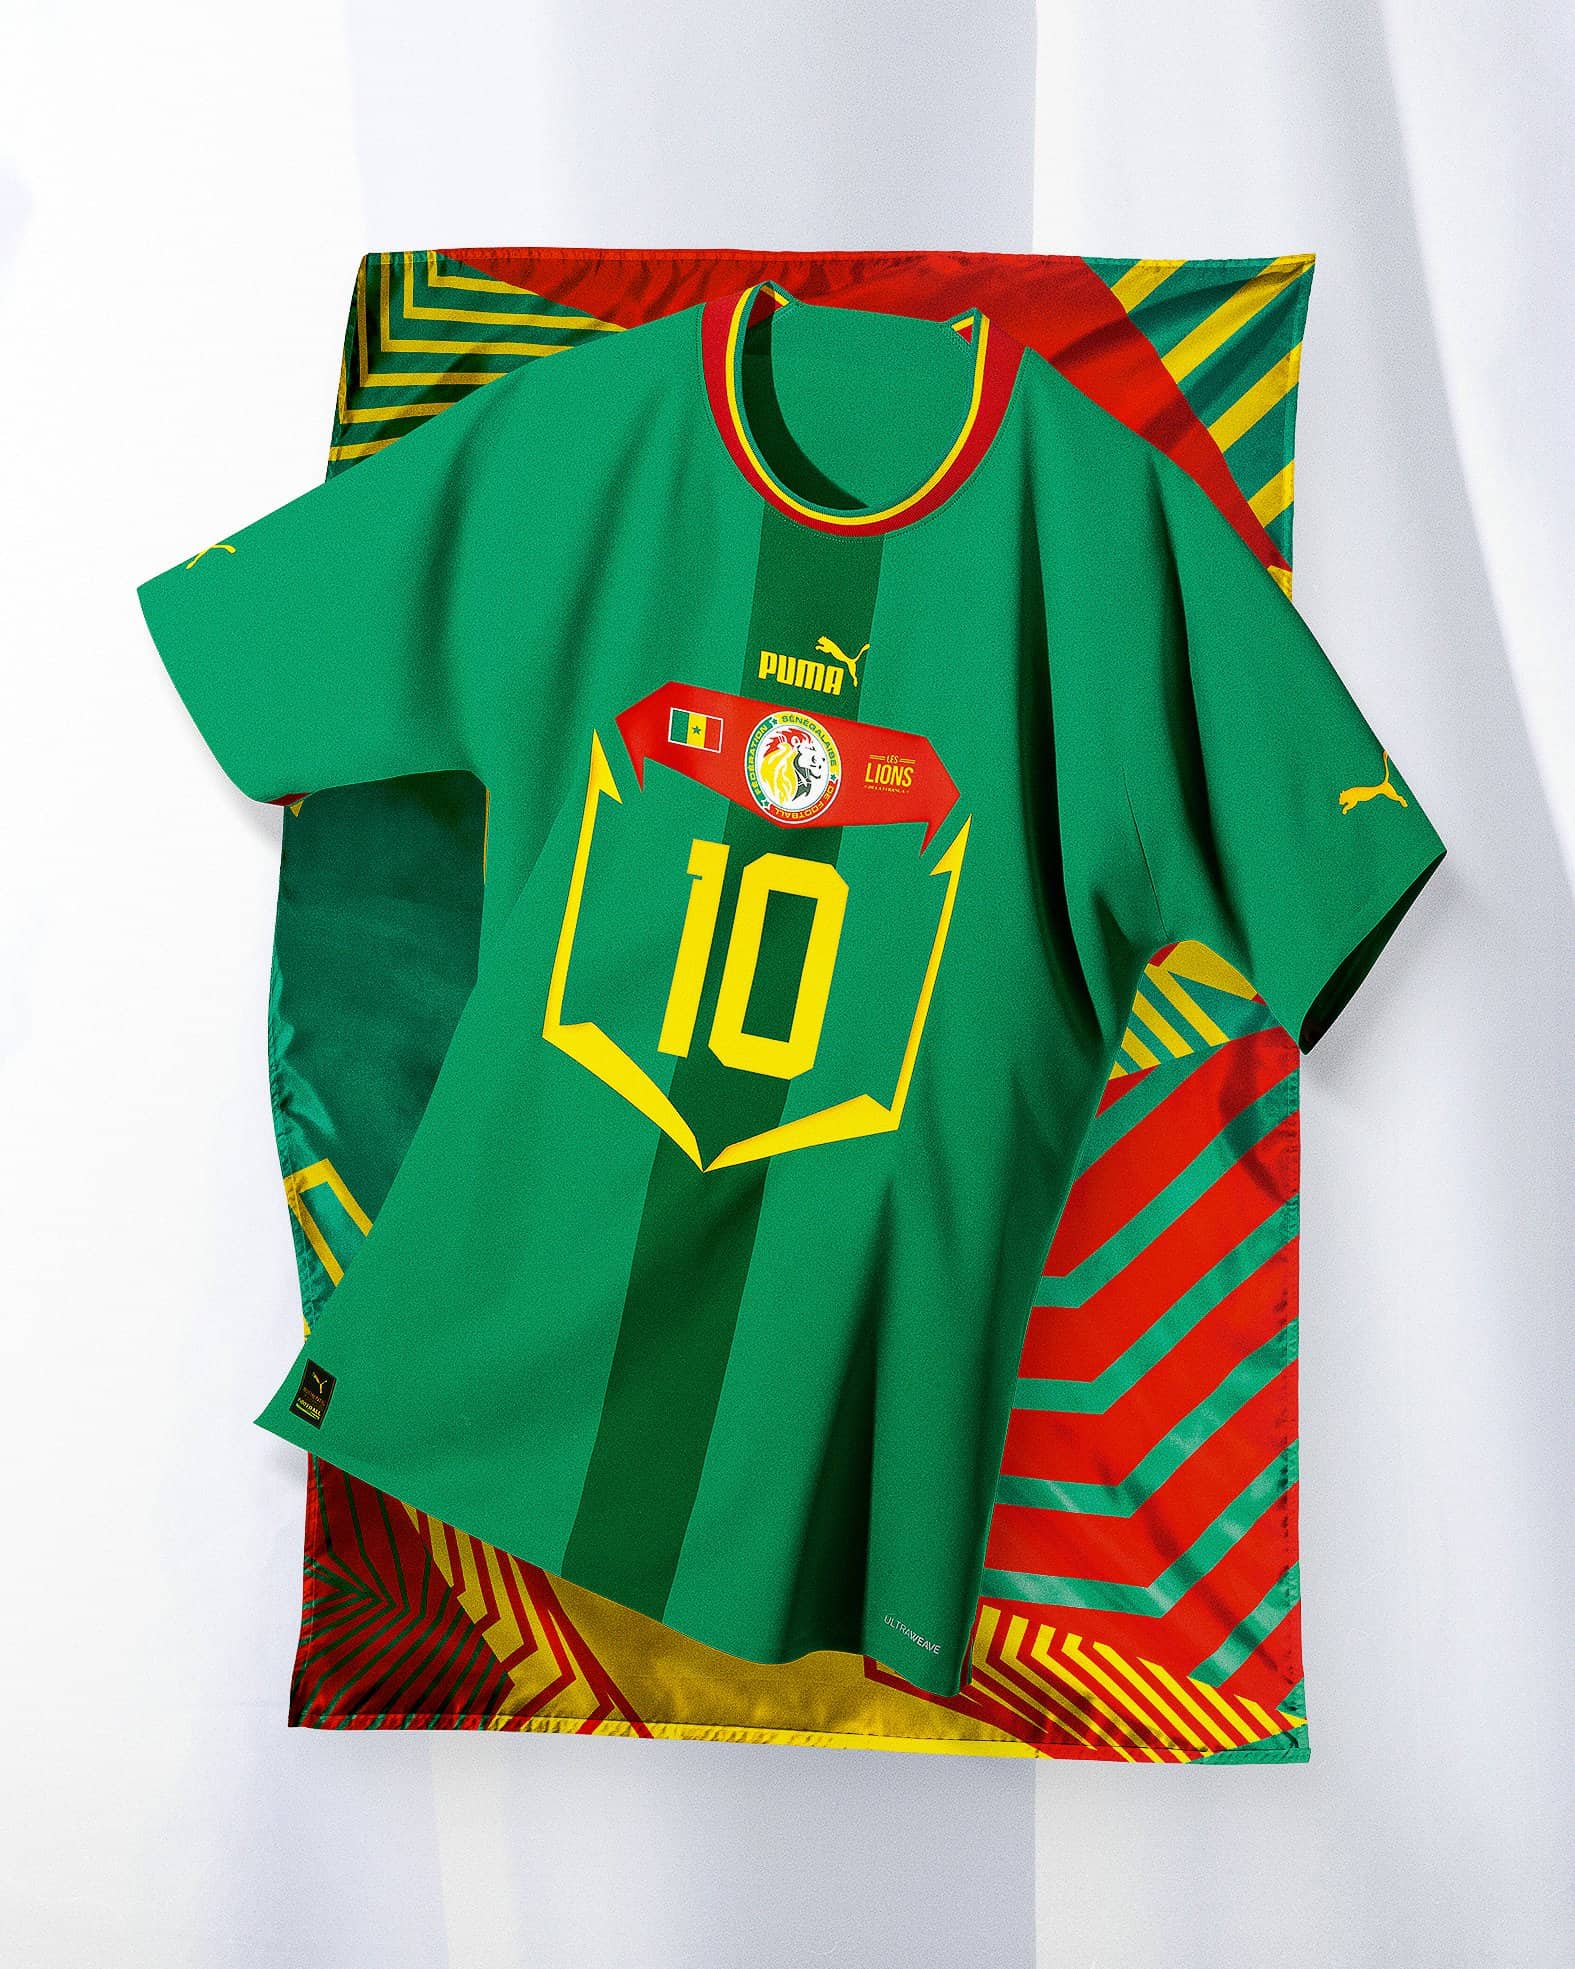 Maroc, Sénégal, Côte d'Ivoire, Suisse PUMA dévoile les nouveaux maillots  extérieurs de ses sélections